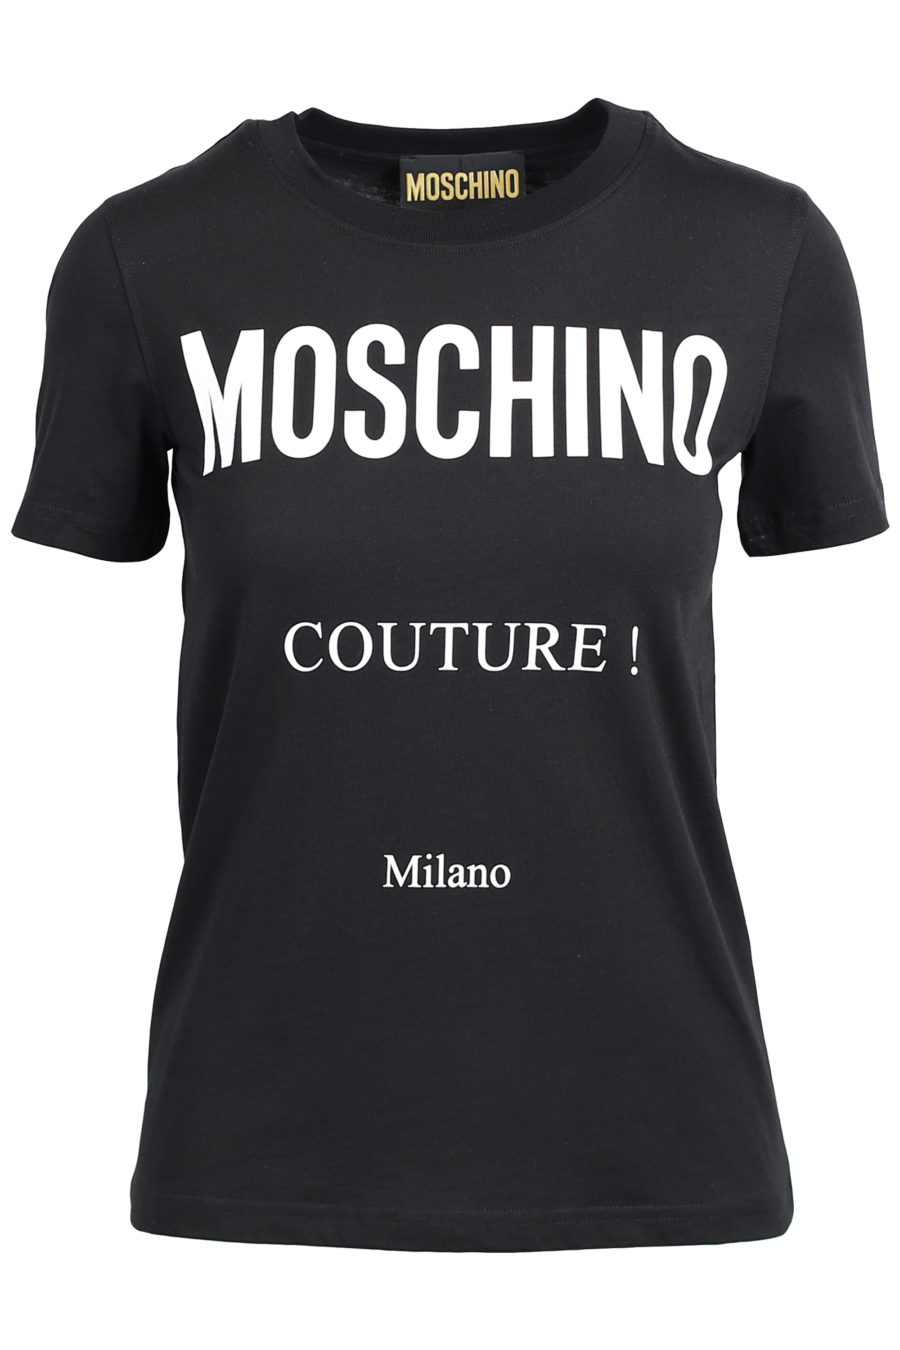 Camiseta negra de manga corta "Couture" - IMG 2050